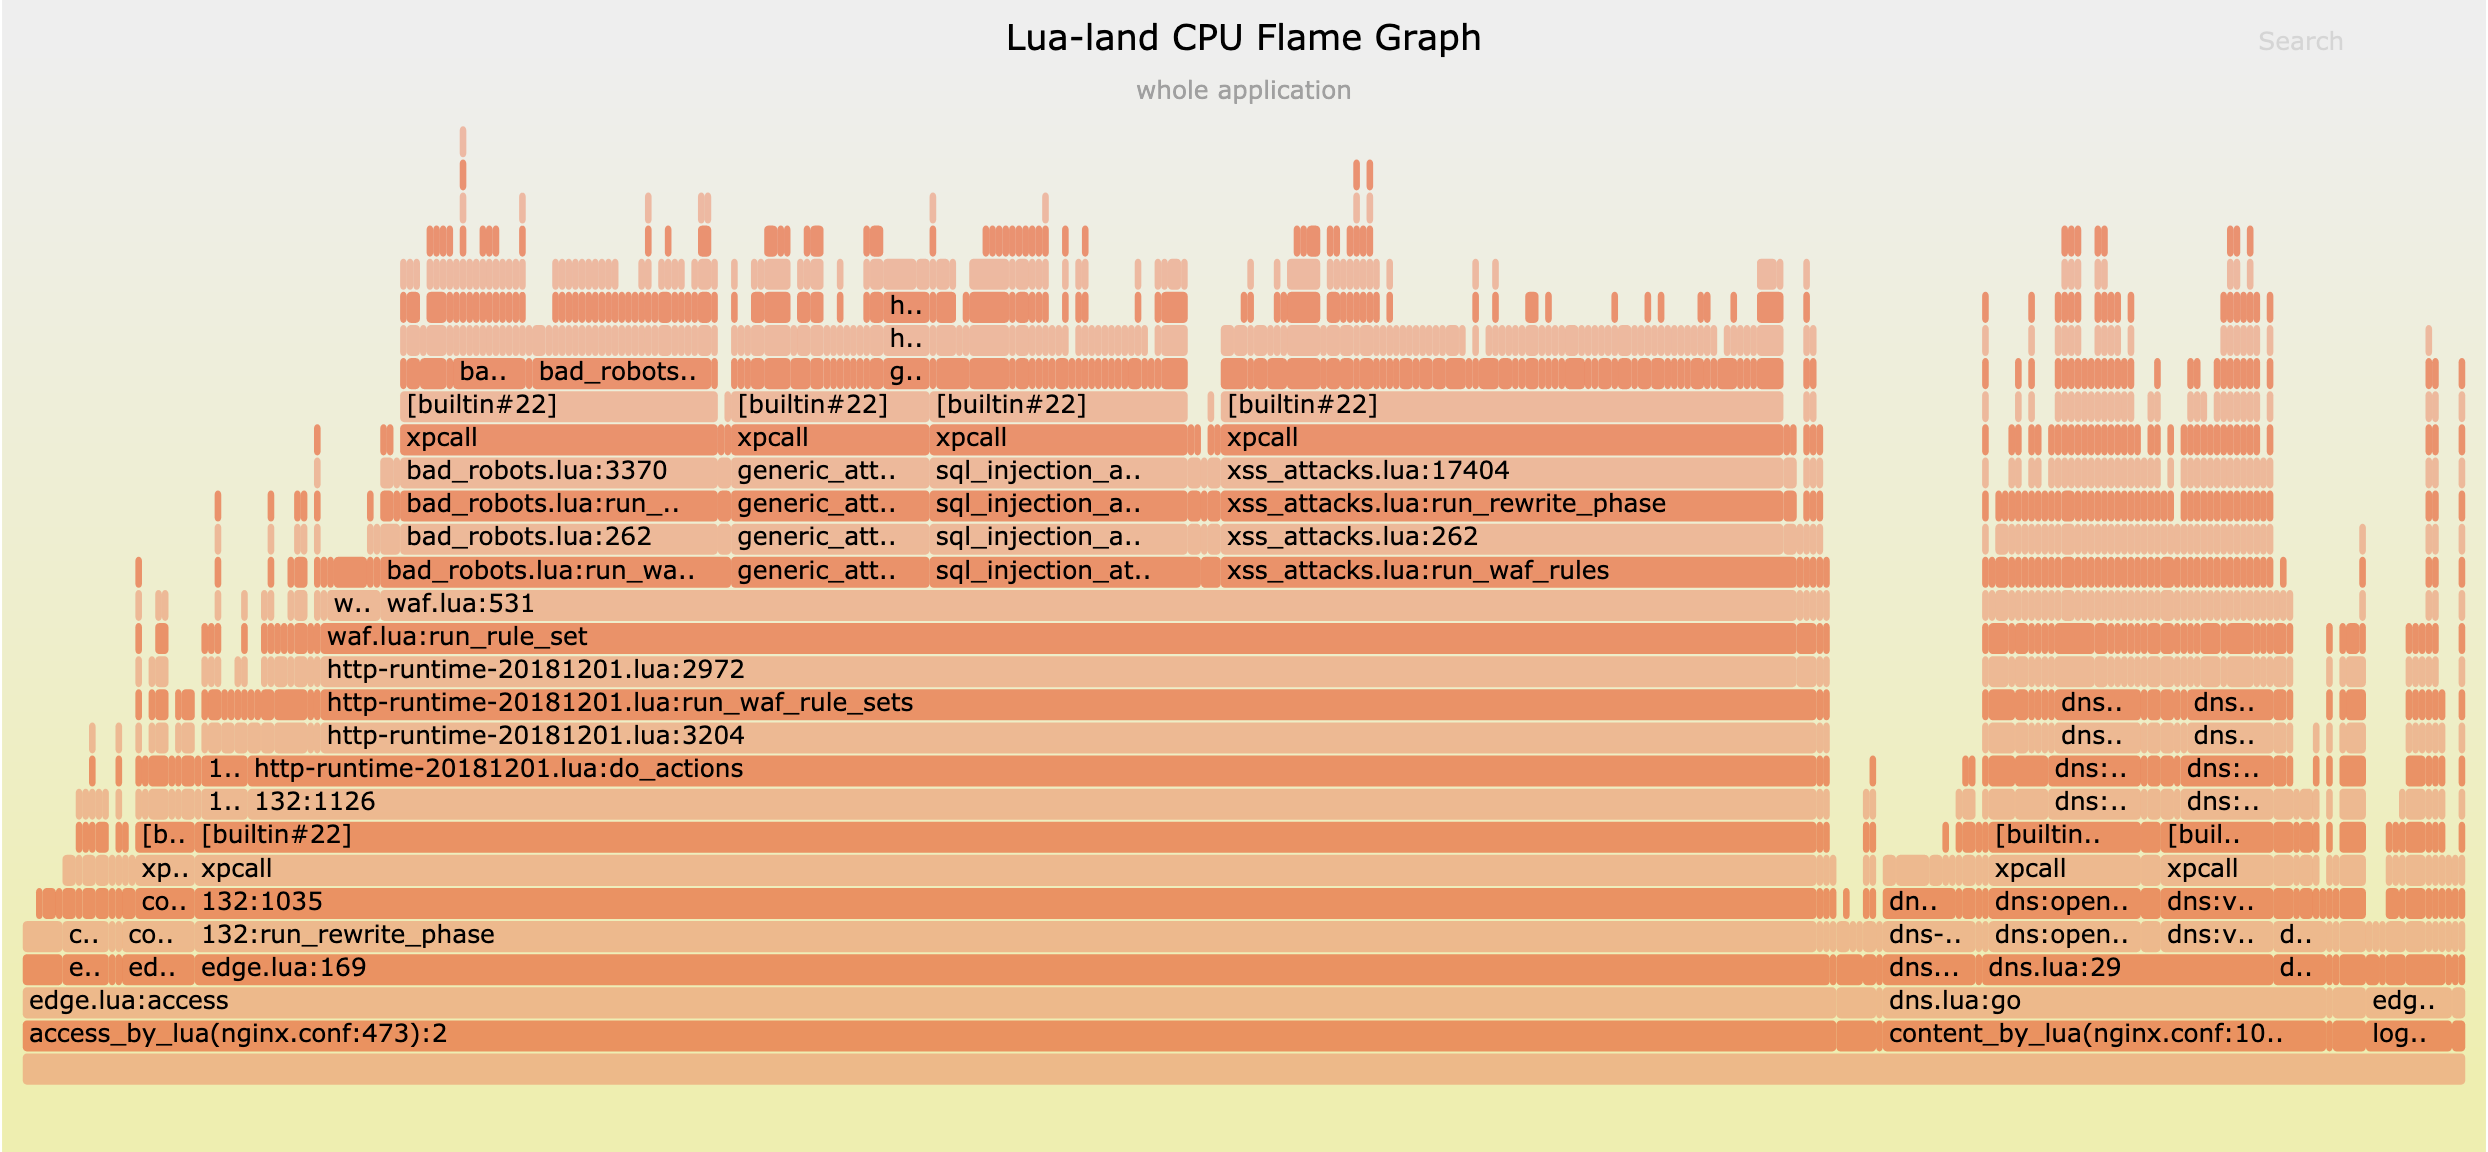 我们的迷你-CDN 服务器的 Lua-land CPU 火焰图